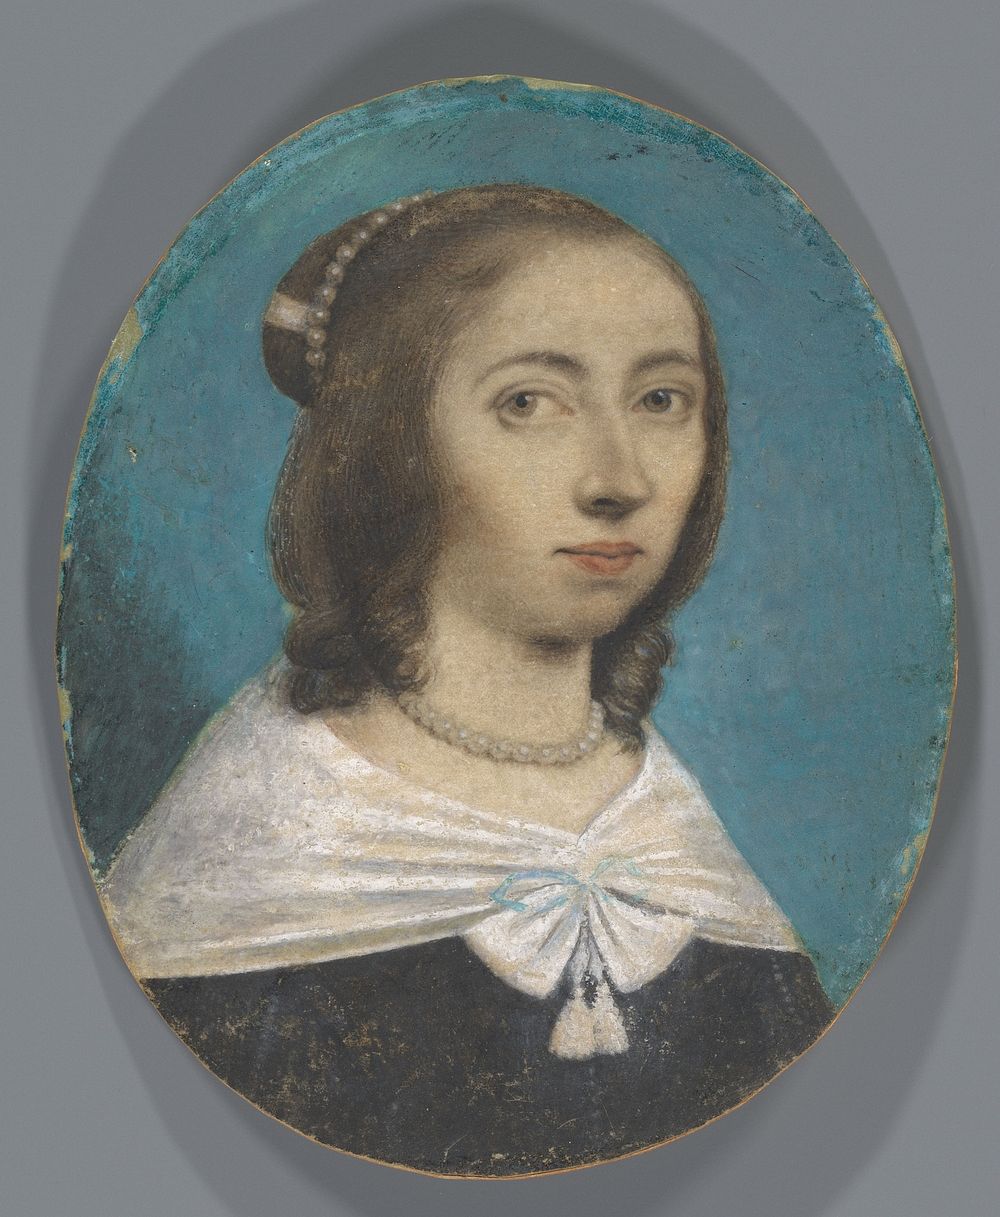 Portret van een vrouw, mogelijk Anna Maria van Schurman (c. 1725) by Anna Maria van Schurman